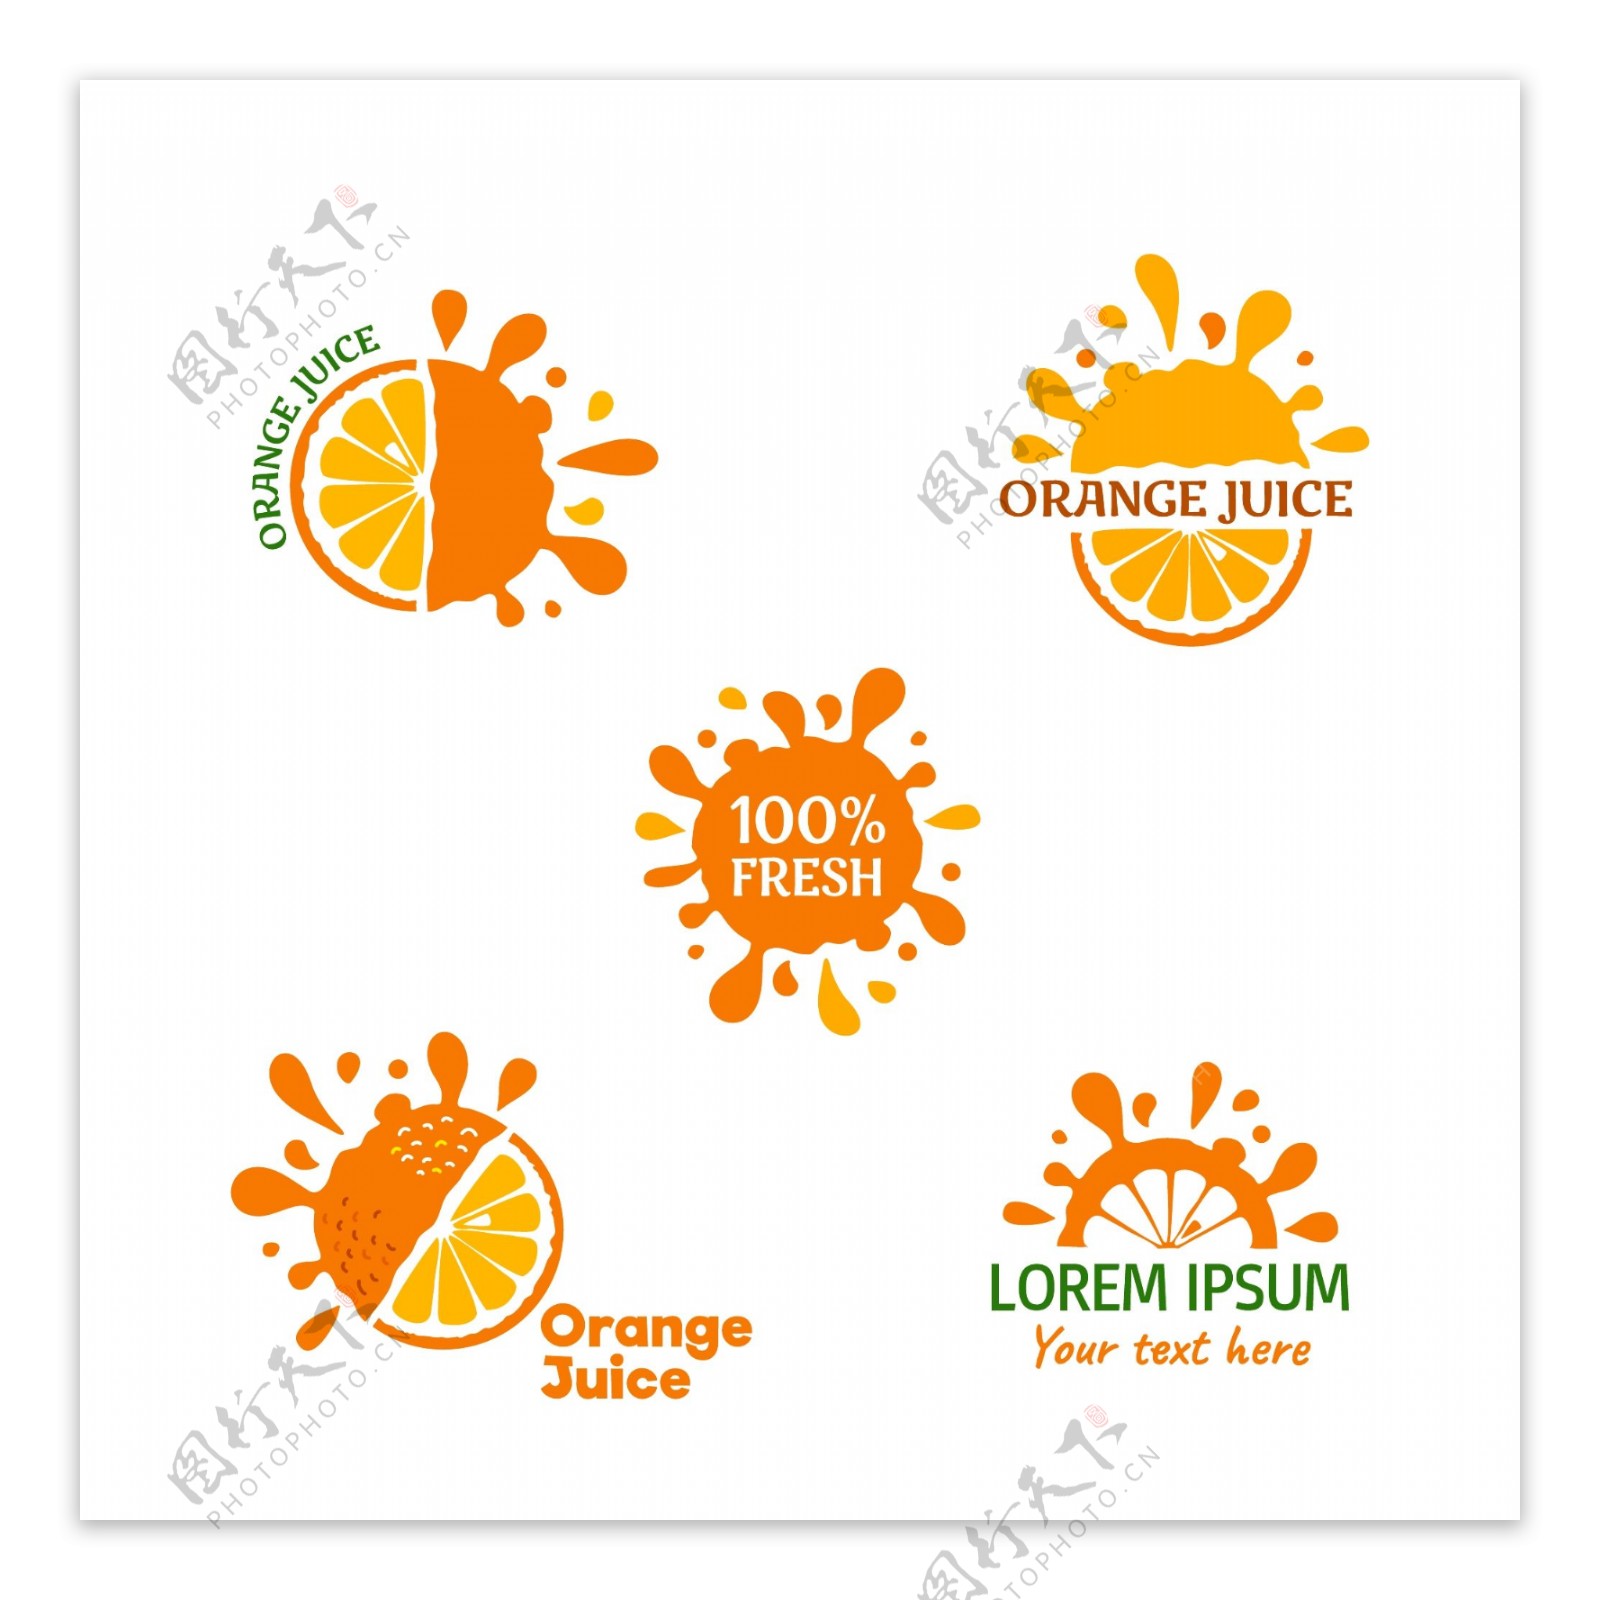 半个橙子LOGO图标设计